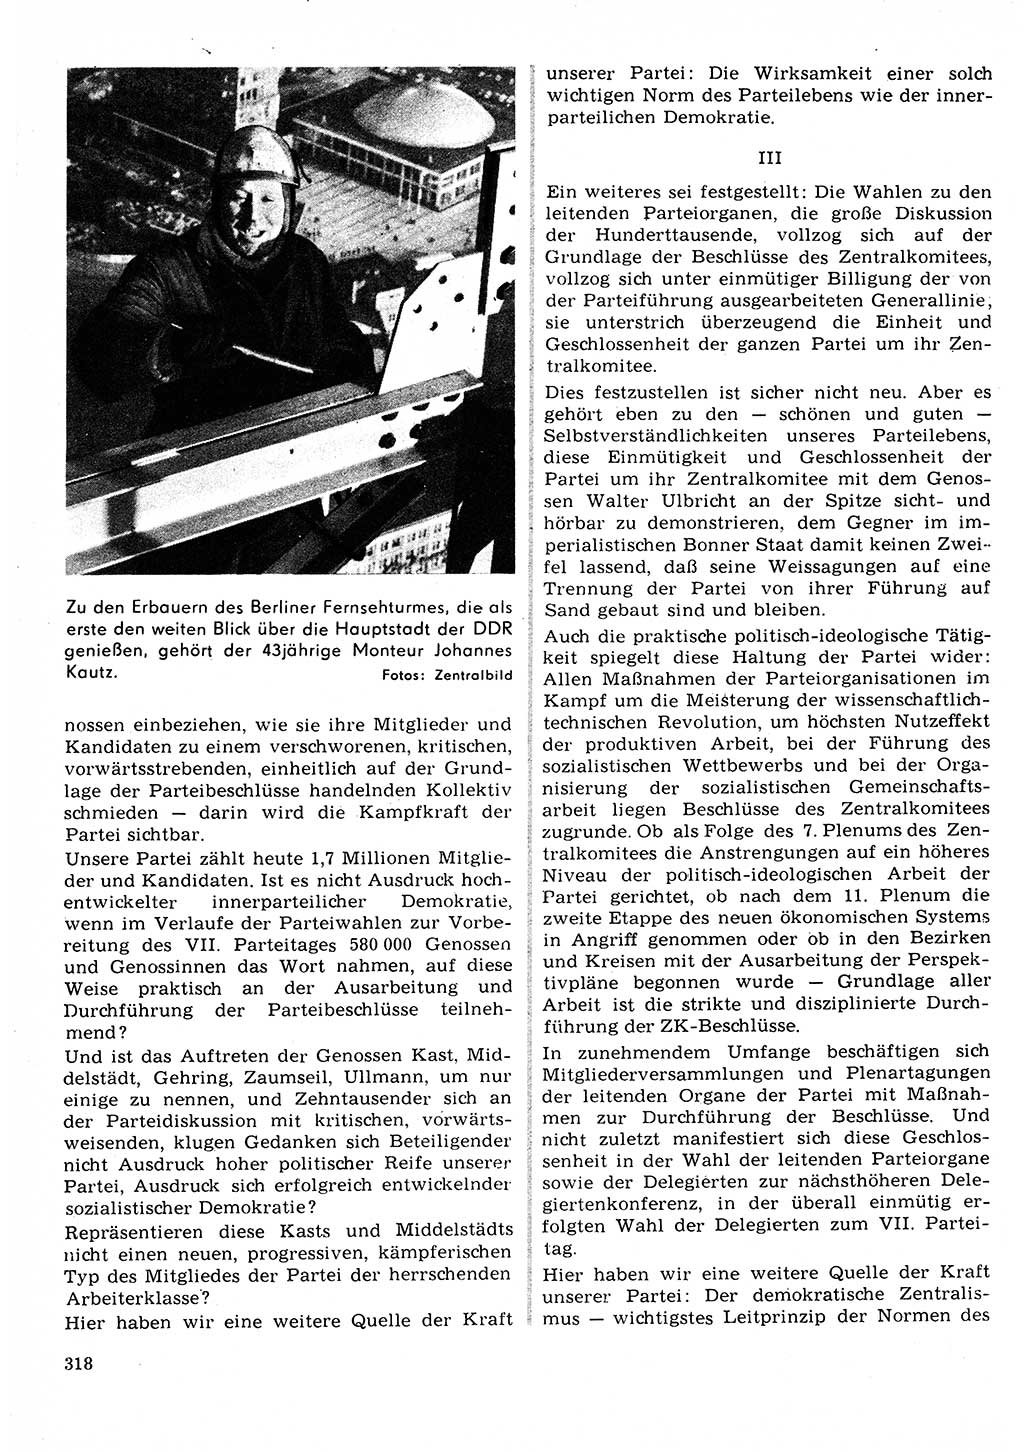 Neuer Weg (NW), Organ des Zentralkomitees (ZK) der SED (Sozialistische Einheitspartei Deutschlands) fÃ¼r Fragen des Parteilebens, 22. Jahrgang [Deutsche Demokratische Republik (DDR)] 1967, Seite 318 (NW ZK SED DDR 1967, S. 318)